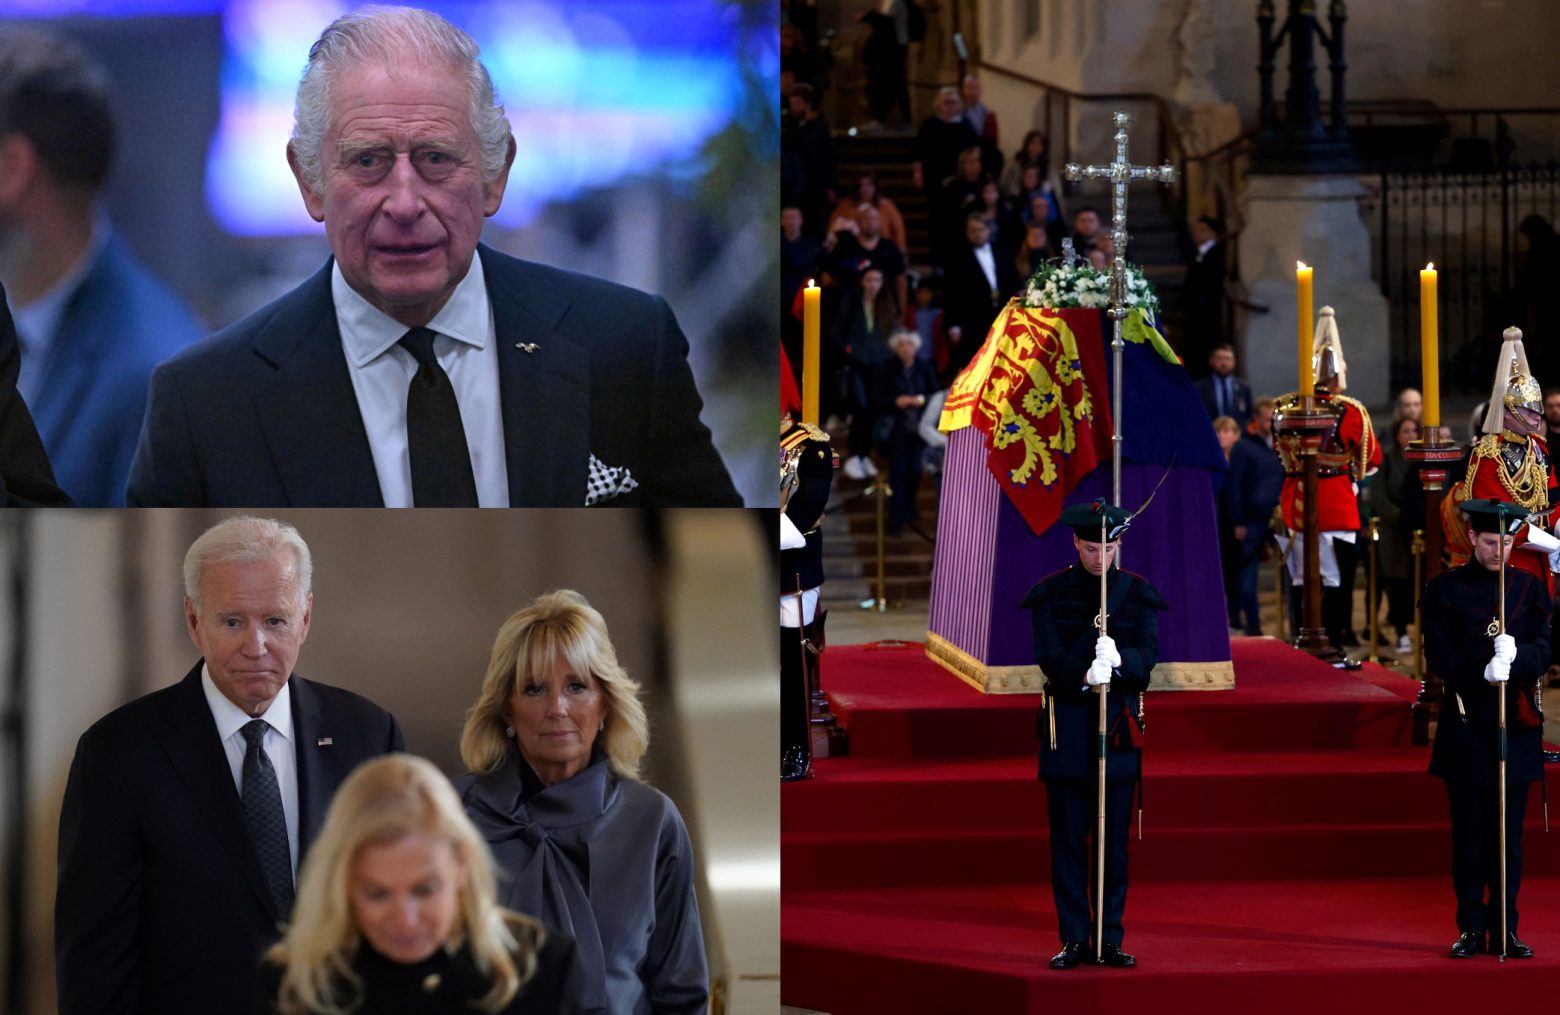 Βασίλισσα Ελισάβετ: Η «δεξίωση του αιώνα» με τους 1.000 VIP πριν την κηδεία της – Προσκάλεσαν… κατά λάθος Χάρι και Μέγκαν